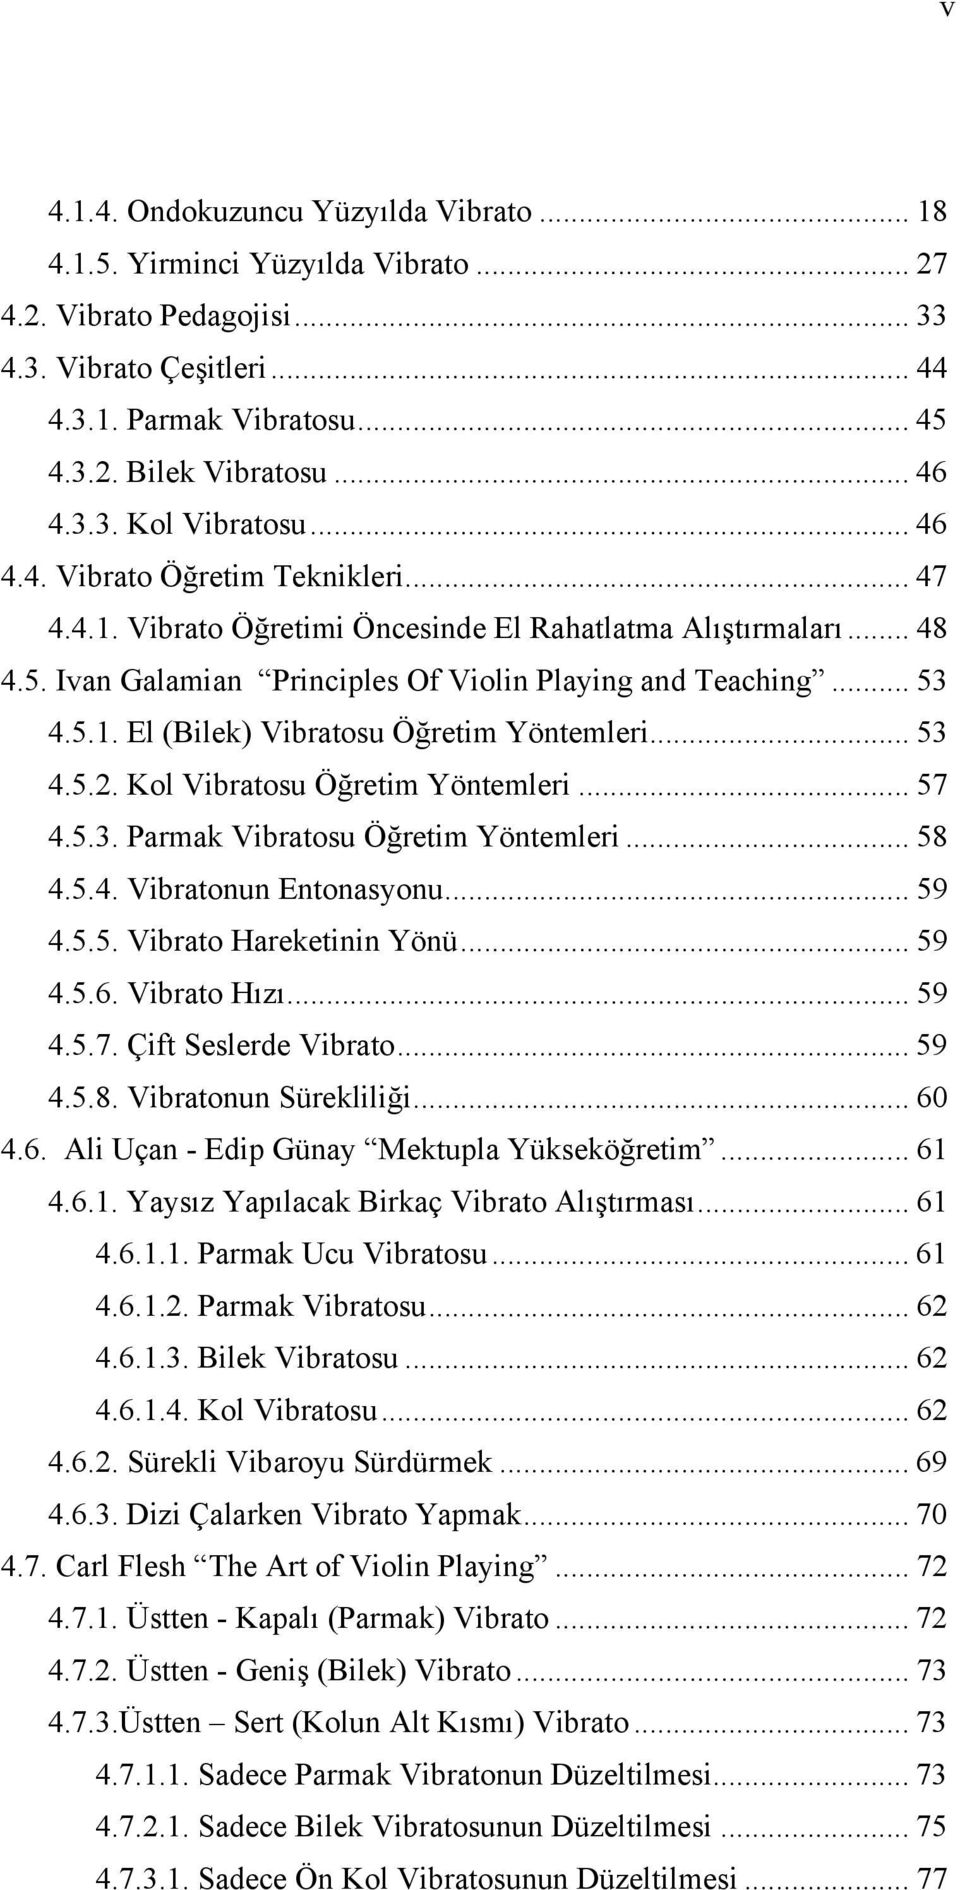 .. 53 4.5.1. El (Bilek) Vibratosu Öğretim Yöntemleri... 53 4.5.2. Kol Vibratosu Öğretim Yöntemleri... 57 4.5.3. Parmak Vibratosu Öğretim Yöntemleri... 58 4.5.4. Vibratonun Entonasyonu... 59 4.5.5. Vibrato Hareketinin Yönü.